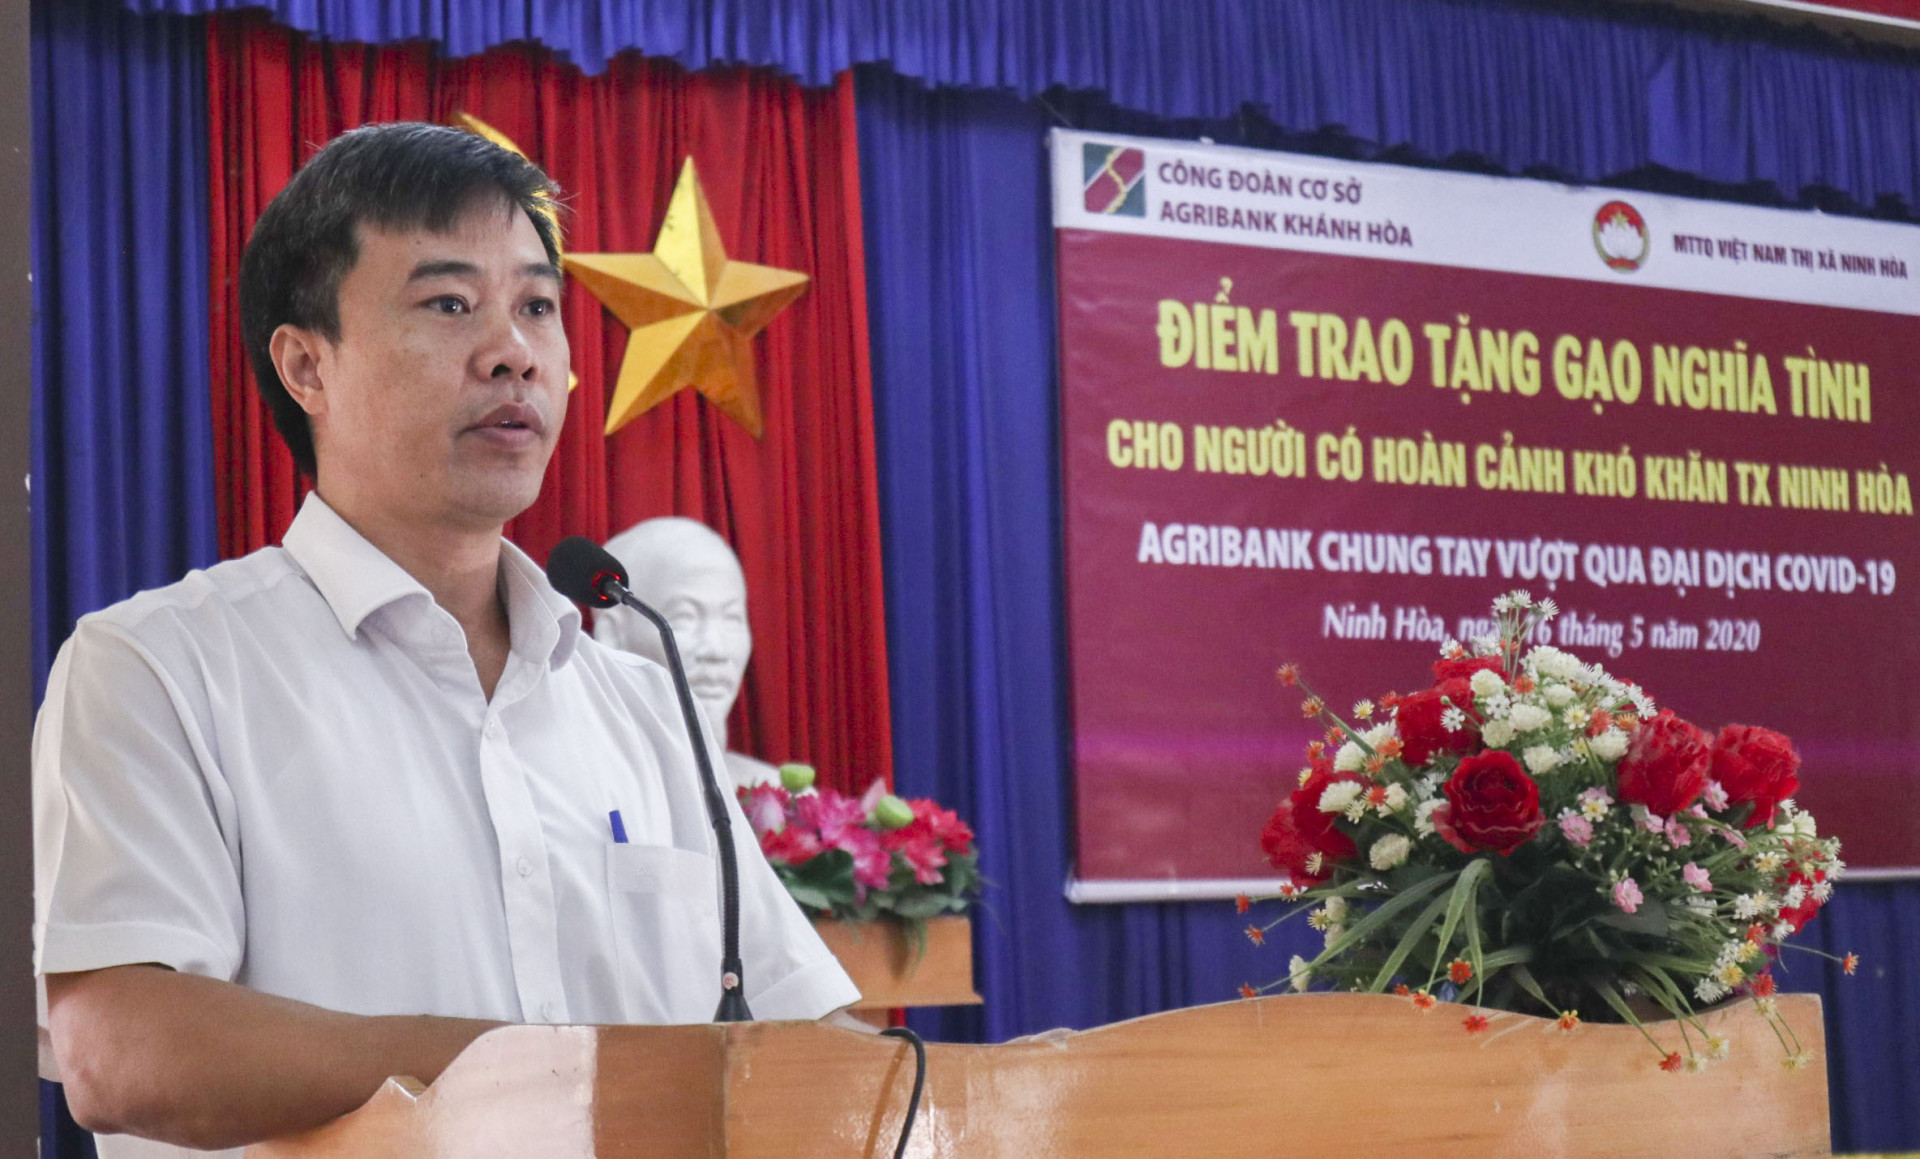 Lãnh đạo Agribank chi nhánh Khánh Hòa phát biểu tại buổi trao tặng quà cho người dân thị xã Ninh Hòa.